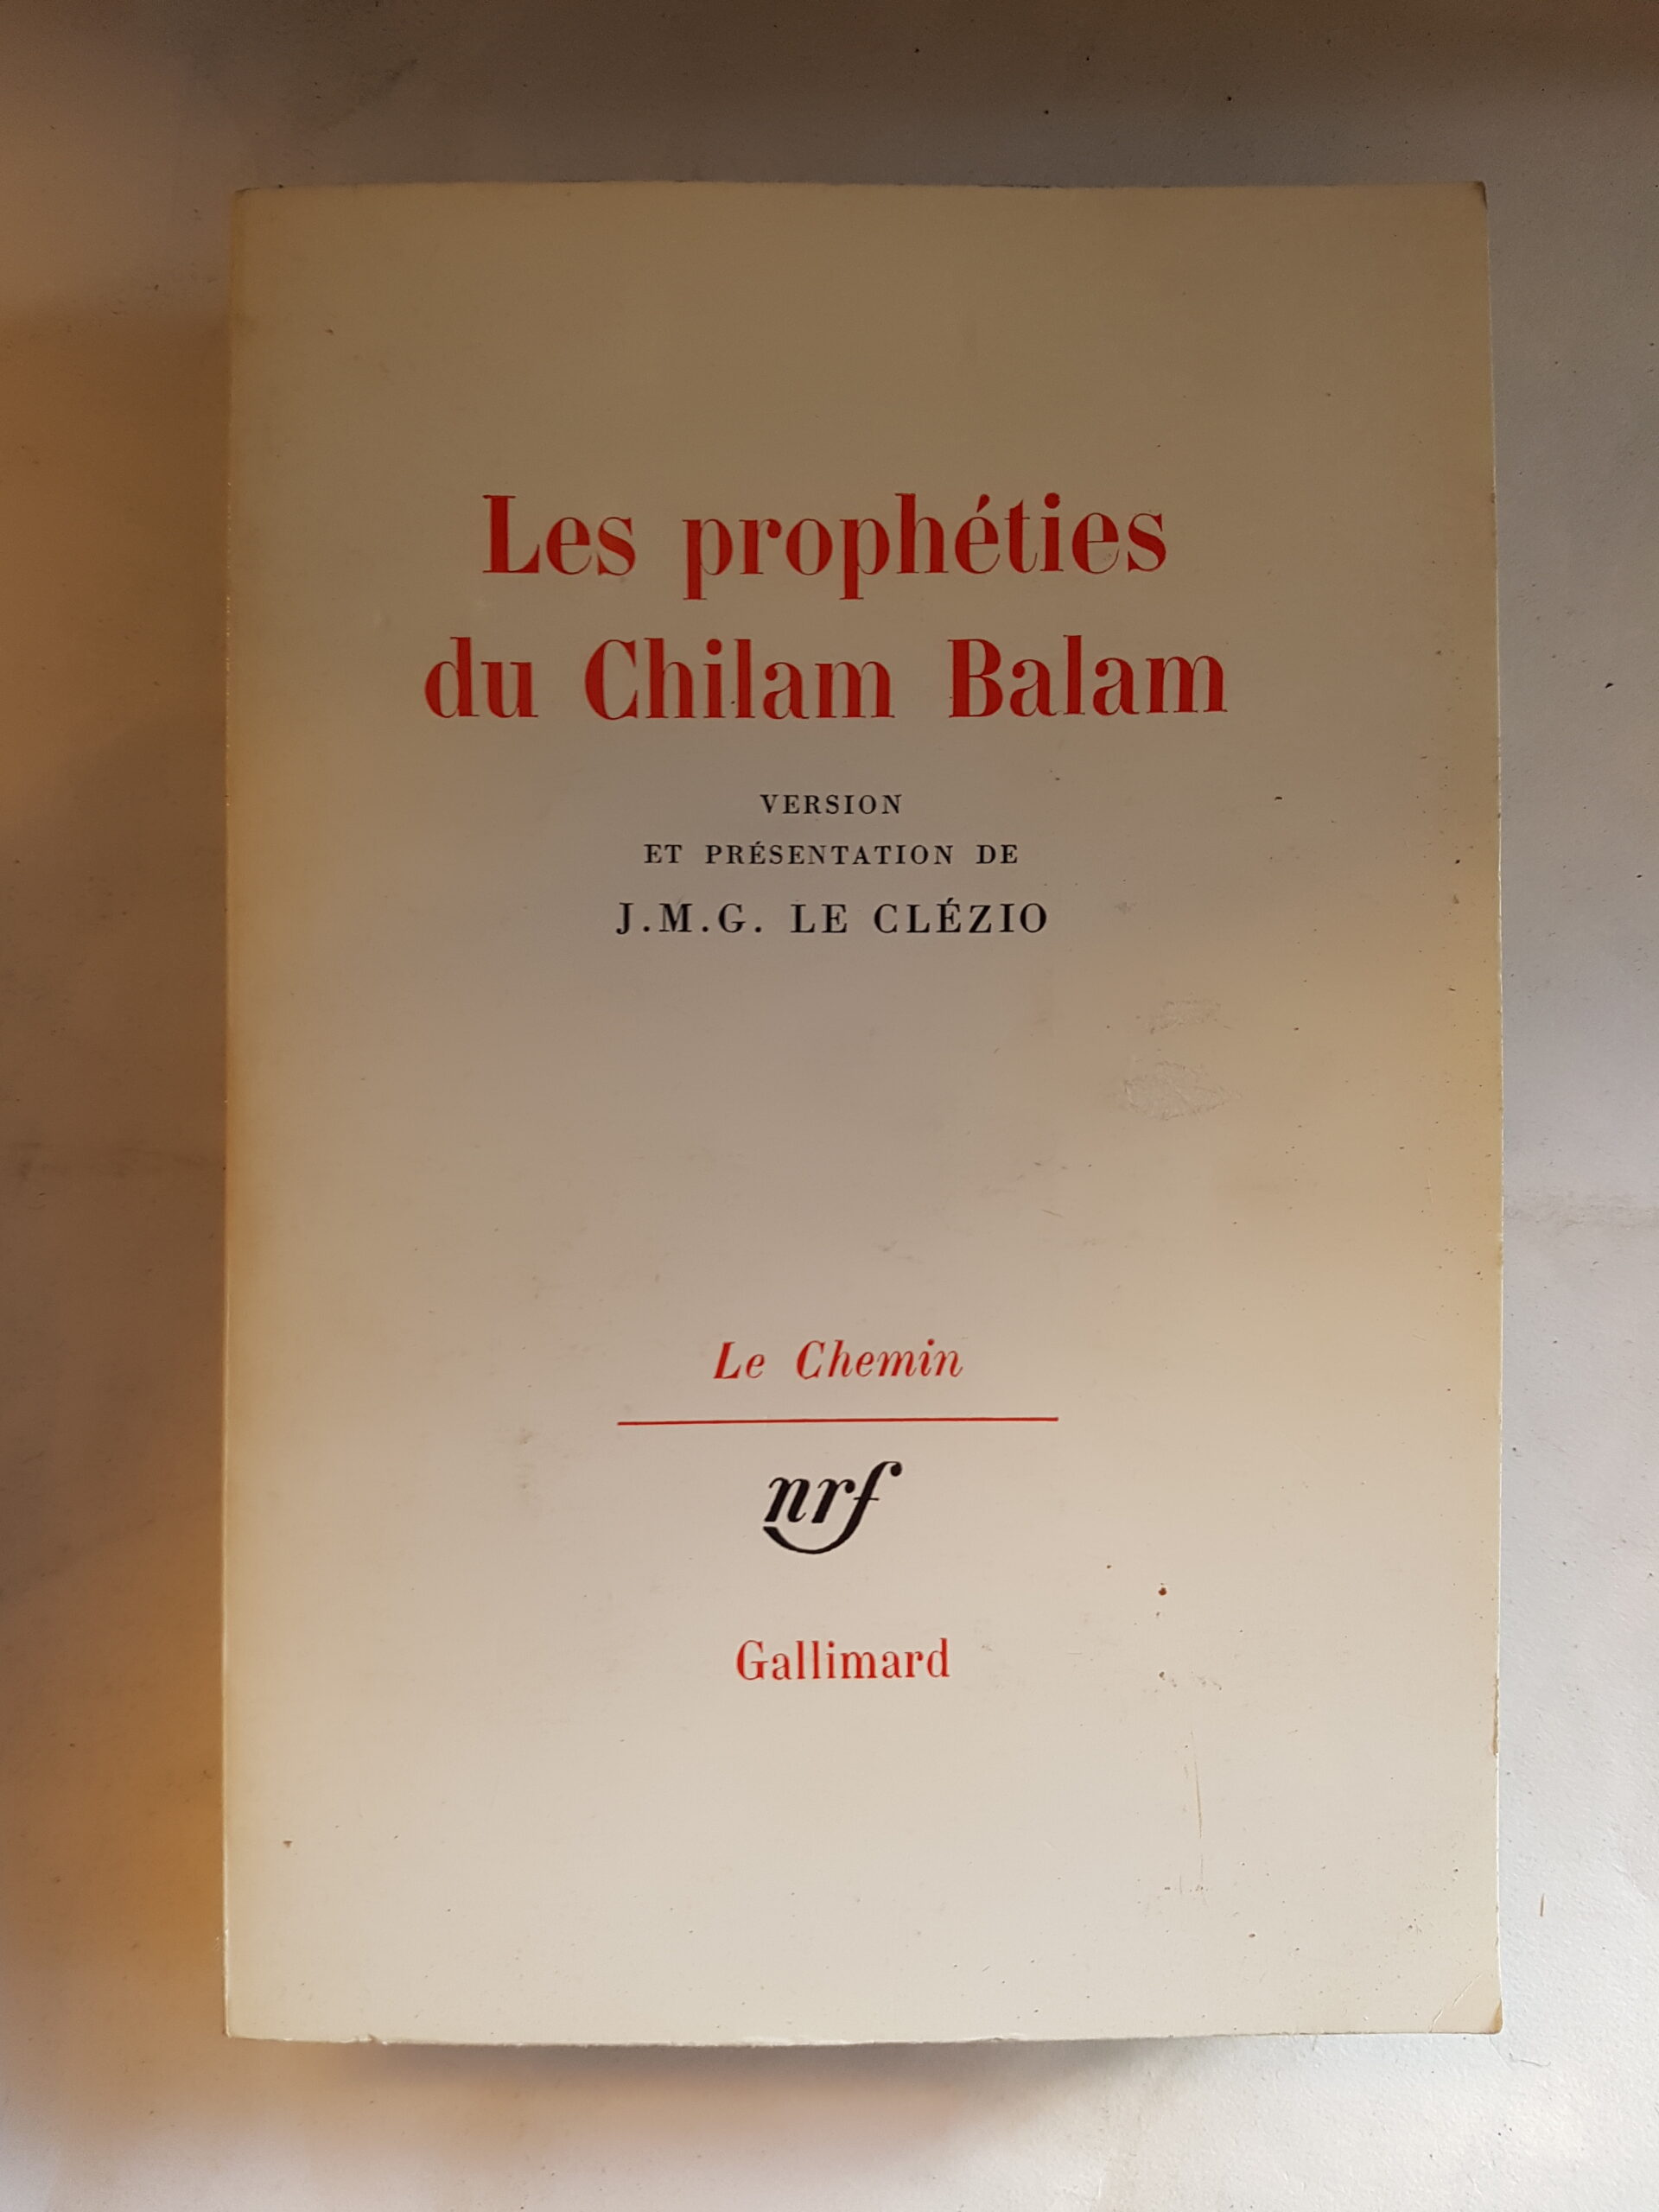 Les prophéties du Chilam Balam - LE CLÉZIO J.M.G.